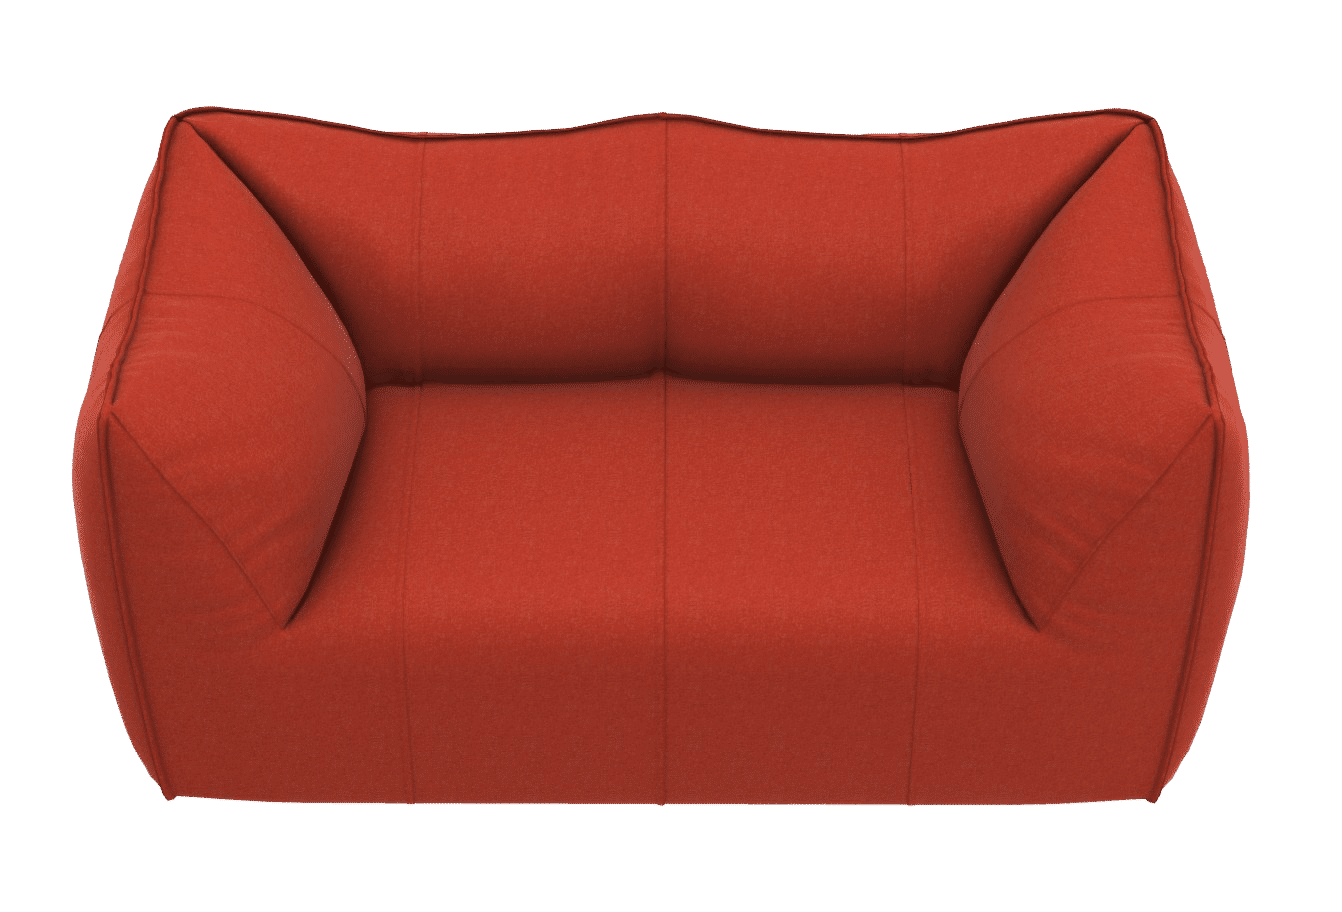 Photo of Le Bambole sofa by B&B Italia, a'leading manufacturer of high quality designer furniture.